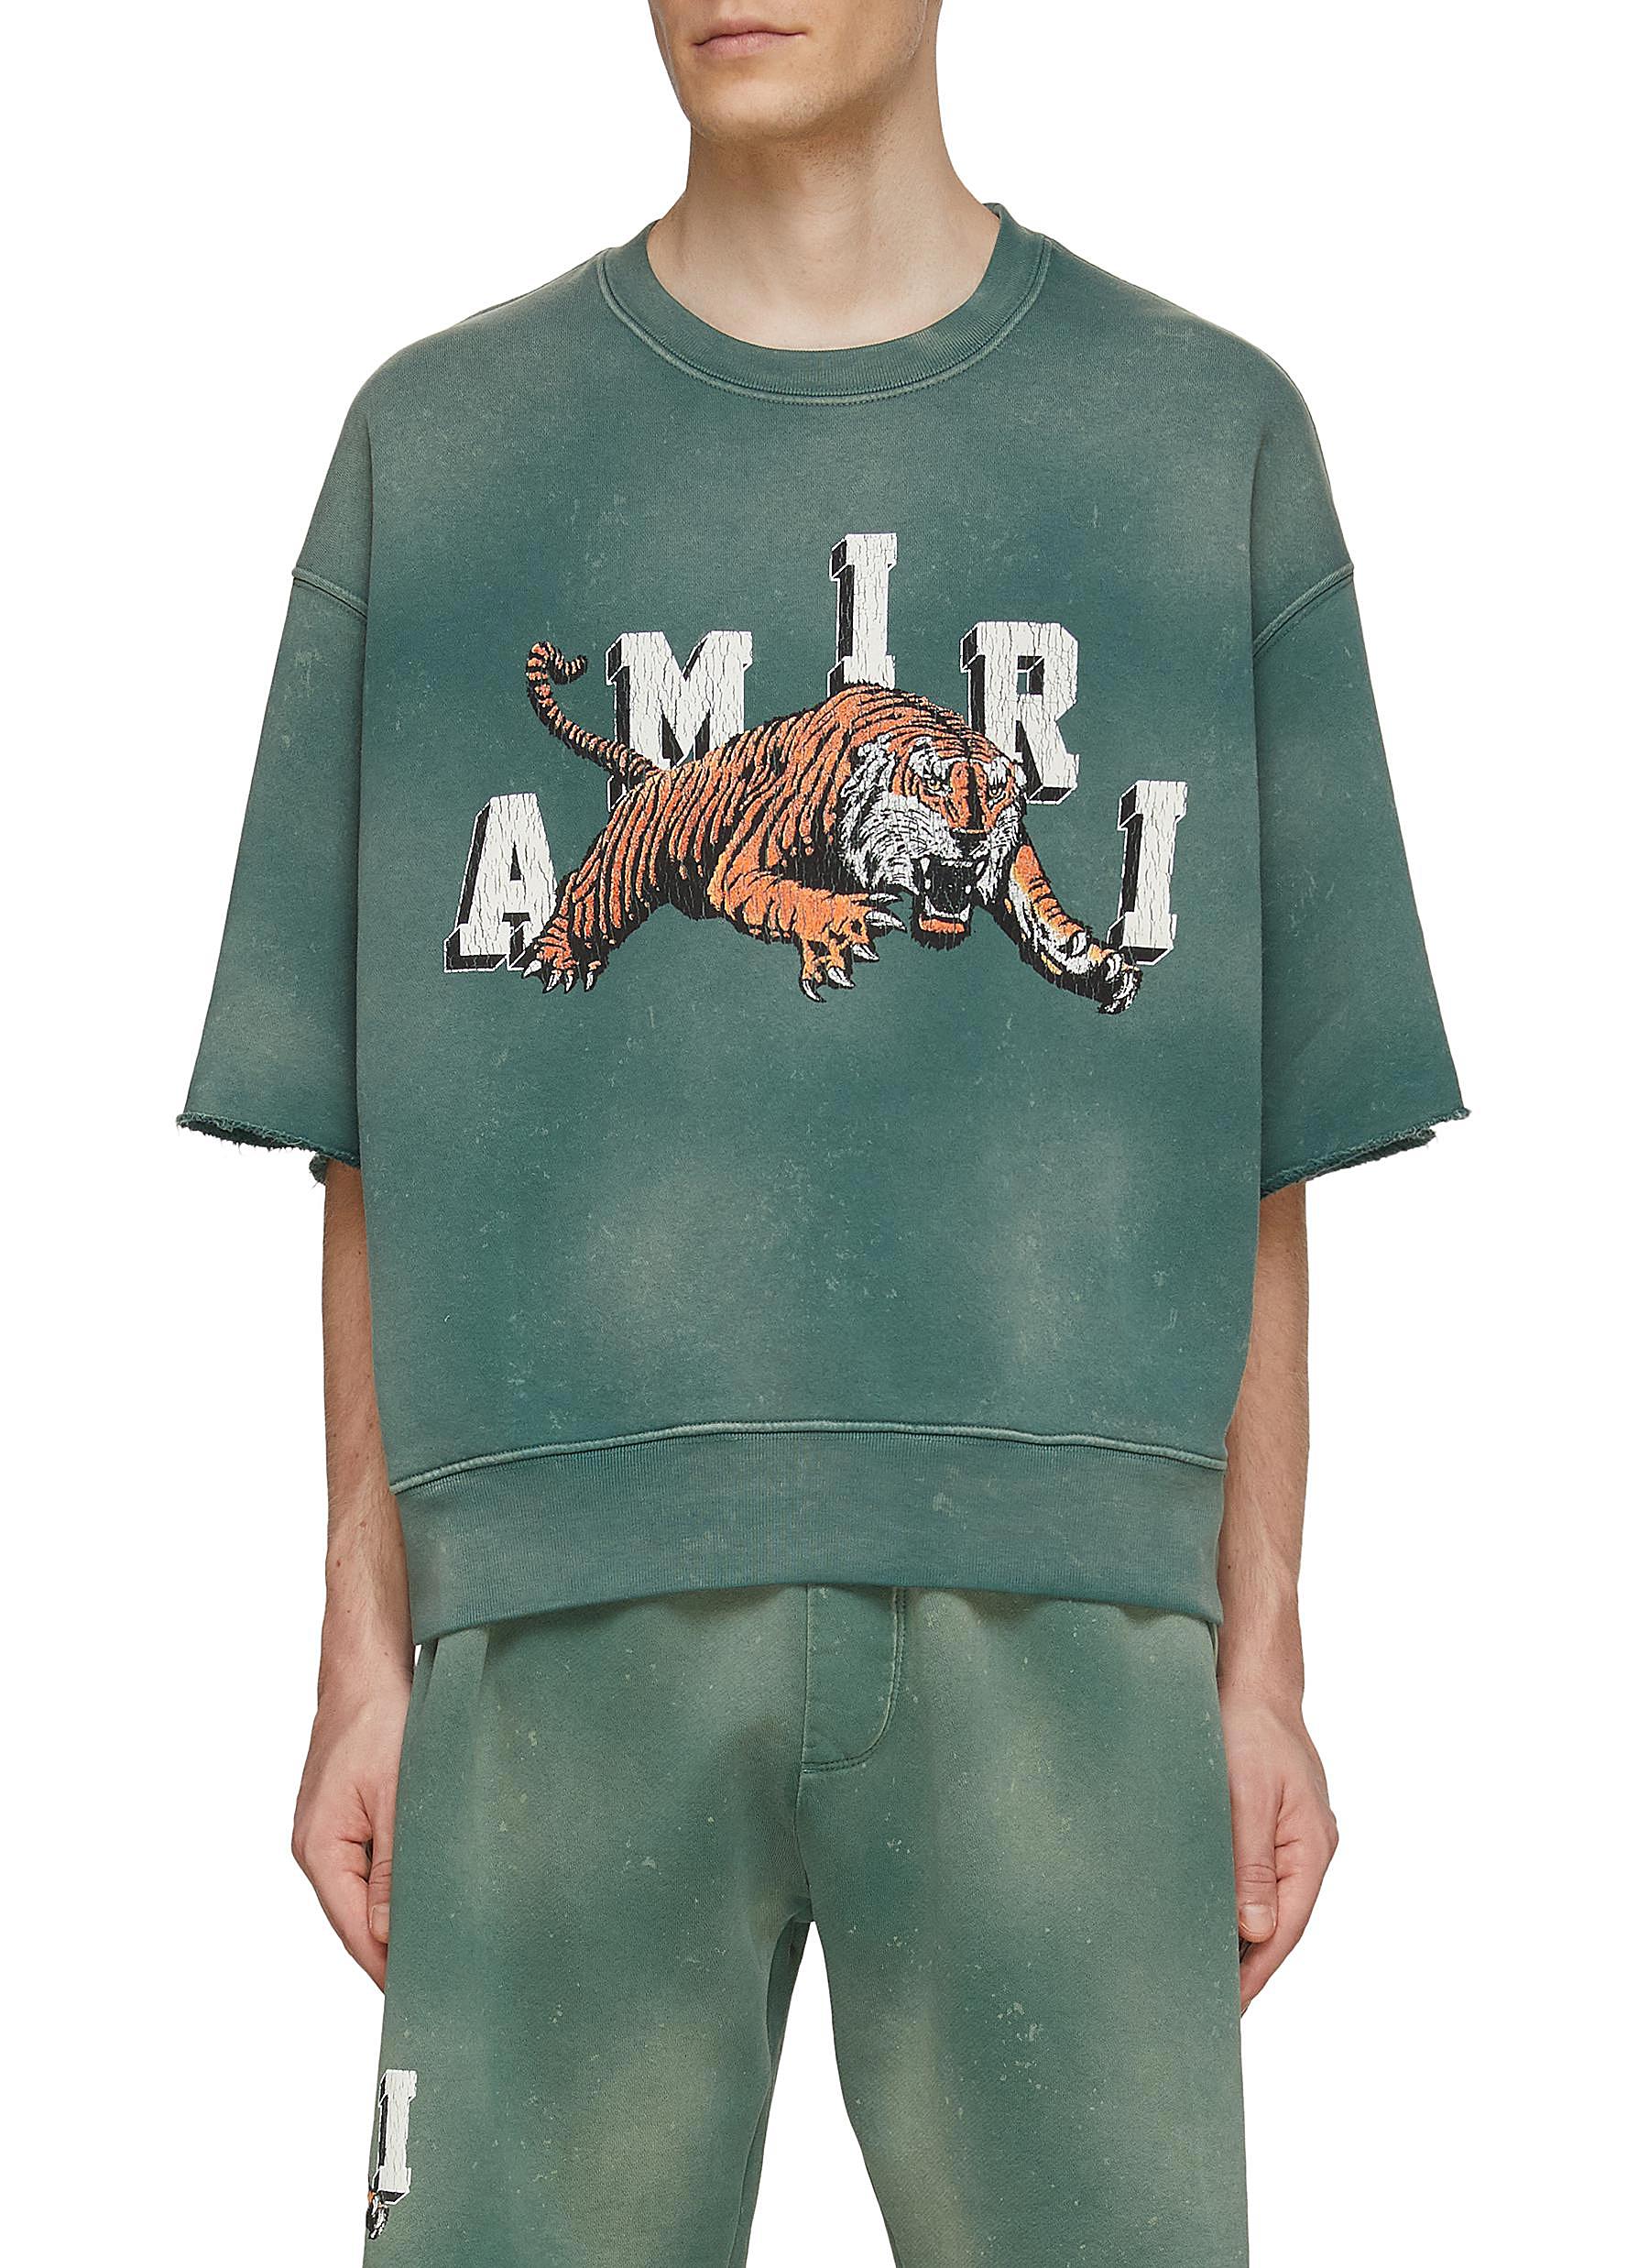 AMIRI, Vintage Tiger Sweatshirt, Men